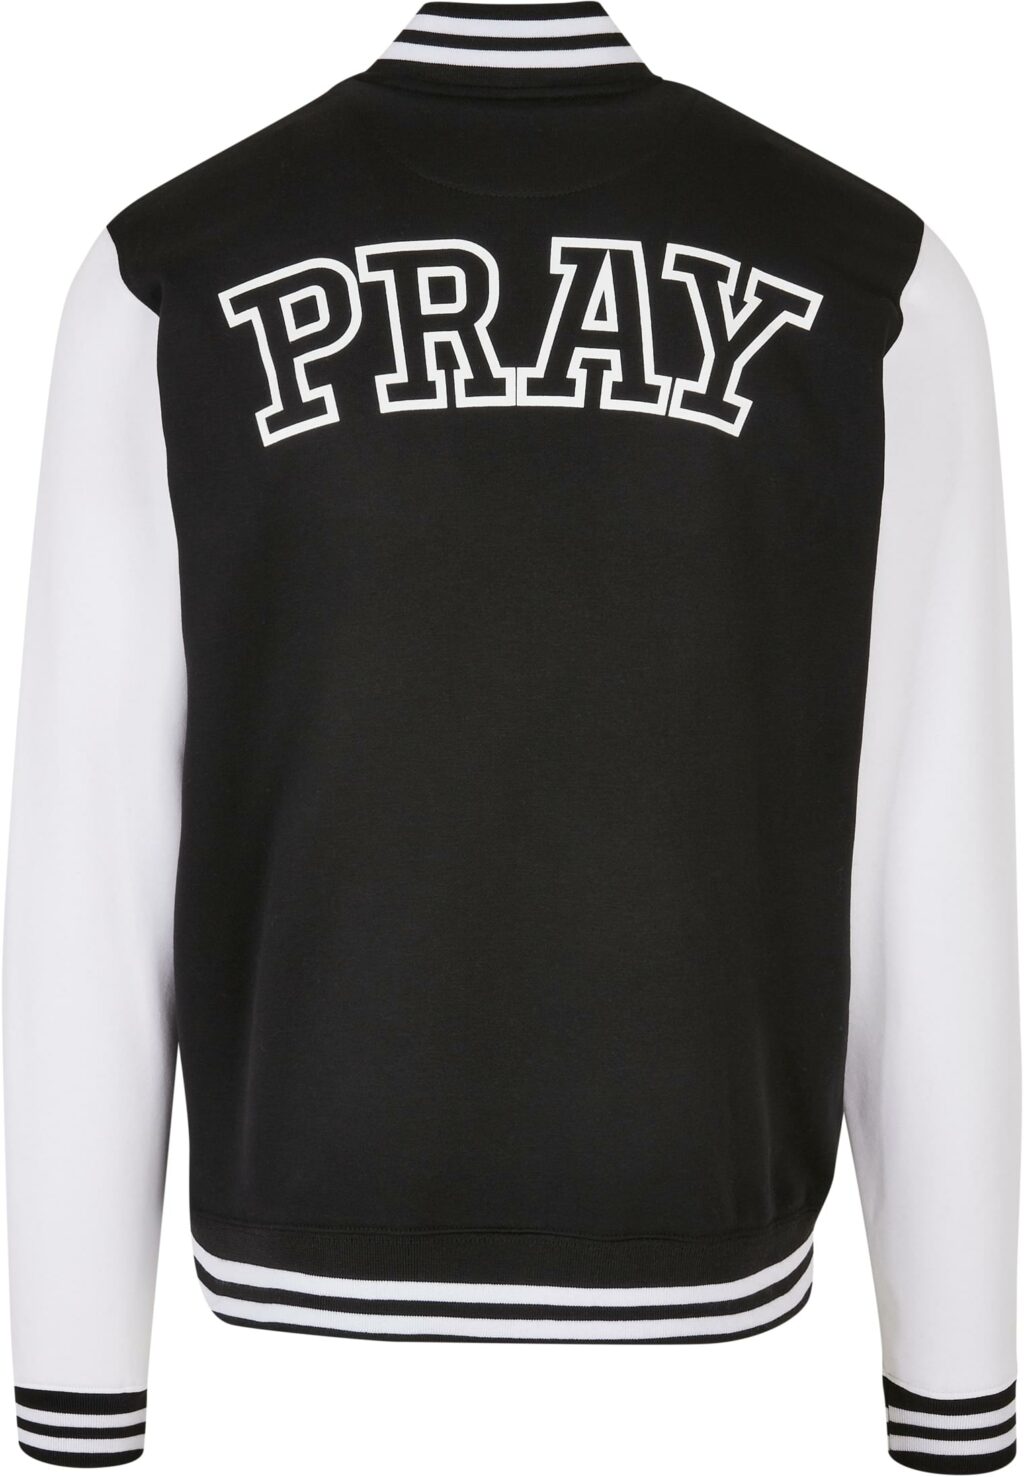 Pray College Jacket blk/wht MT2376